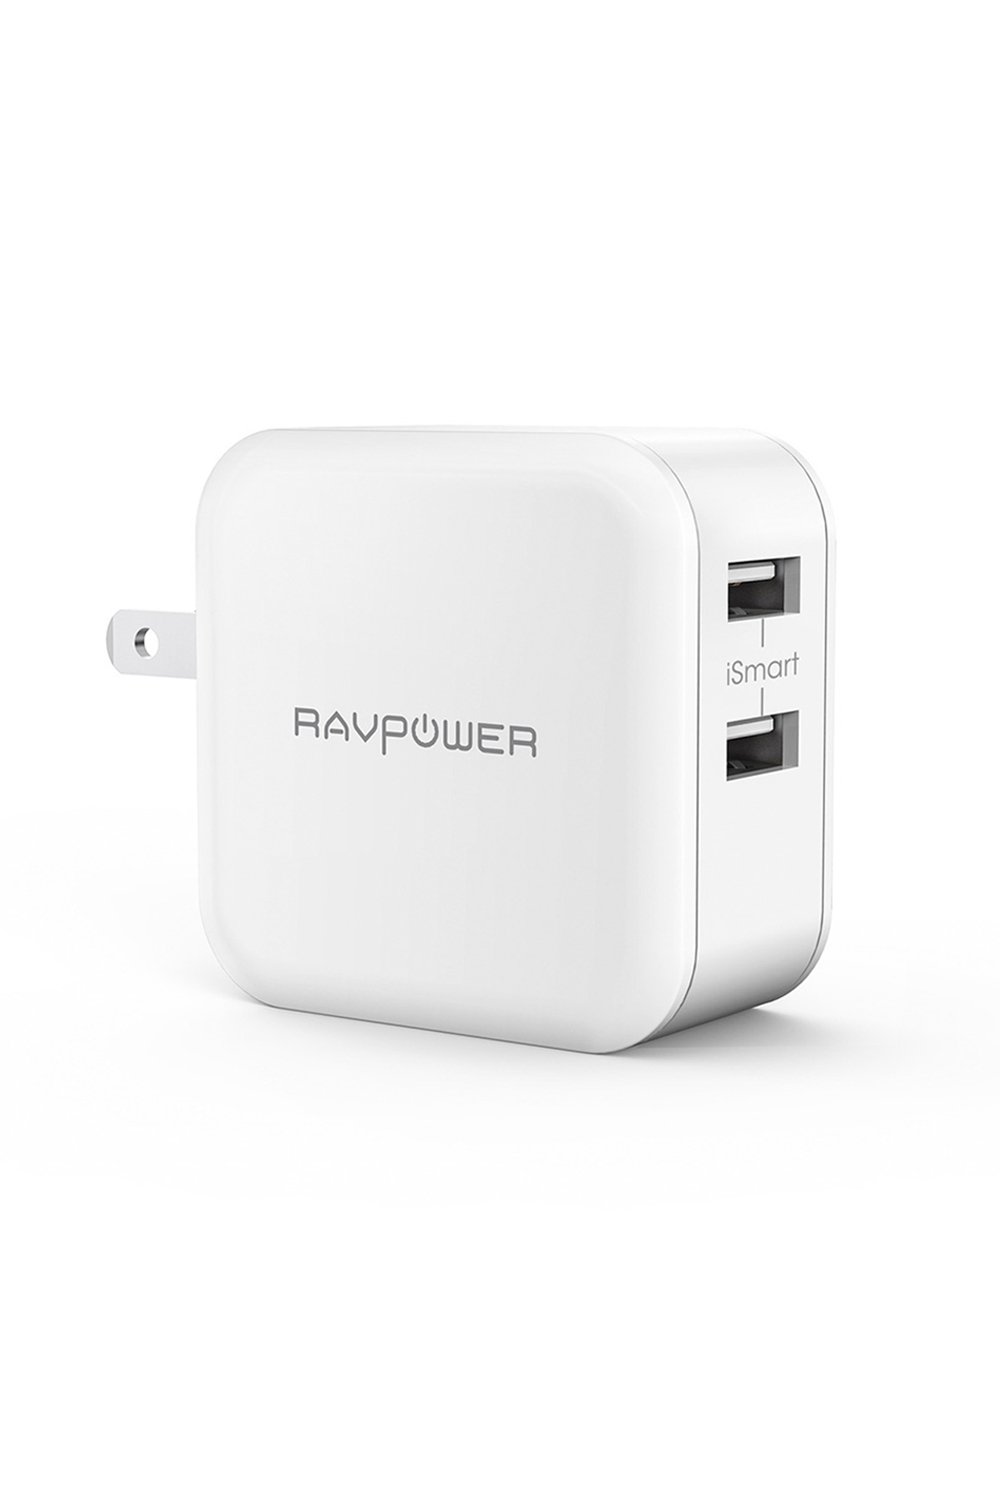 5位：RAVPower USB 充電器 2ポート 24W 【最大出力5V,4.8A/急速/折畳式プラグ】 iPhone/iPad/Android 等のUSB機器対応 RP-UC11 (ホワイト)